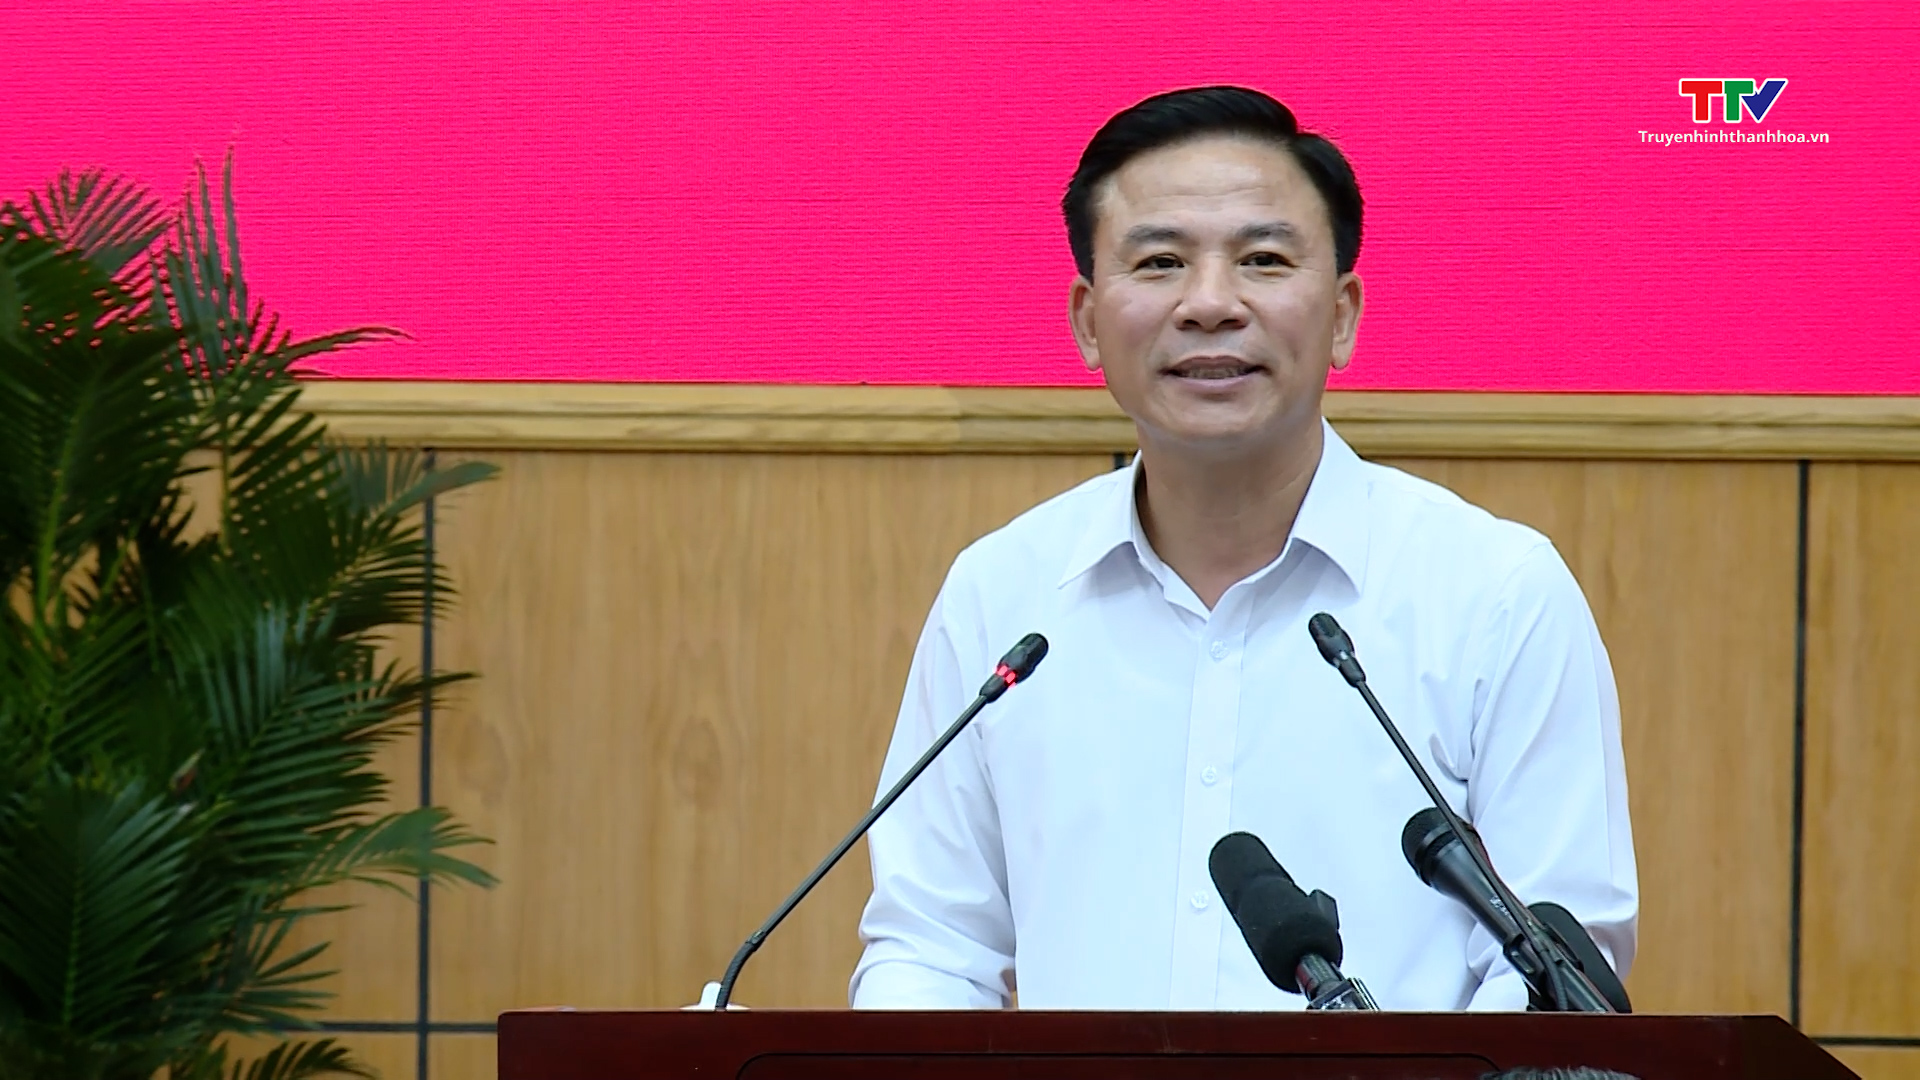 Thủ tướng Chính phủ Phạm Minh Chính làm việc với tỉnh Thanh Hóa về tình hình kinh tế - xã hội, quốc phòng - an ninh, công tác xây dựng Đảng và hệ thống chính trị - Ảnh 9.